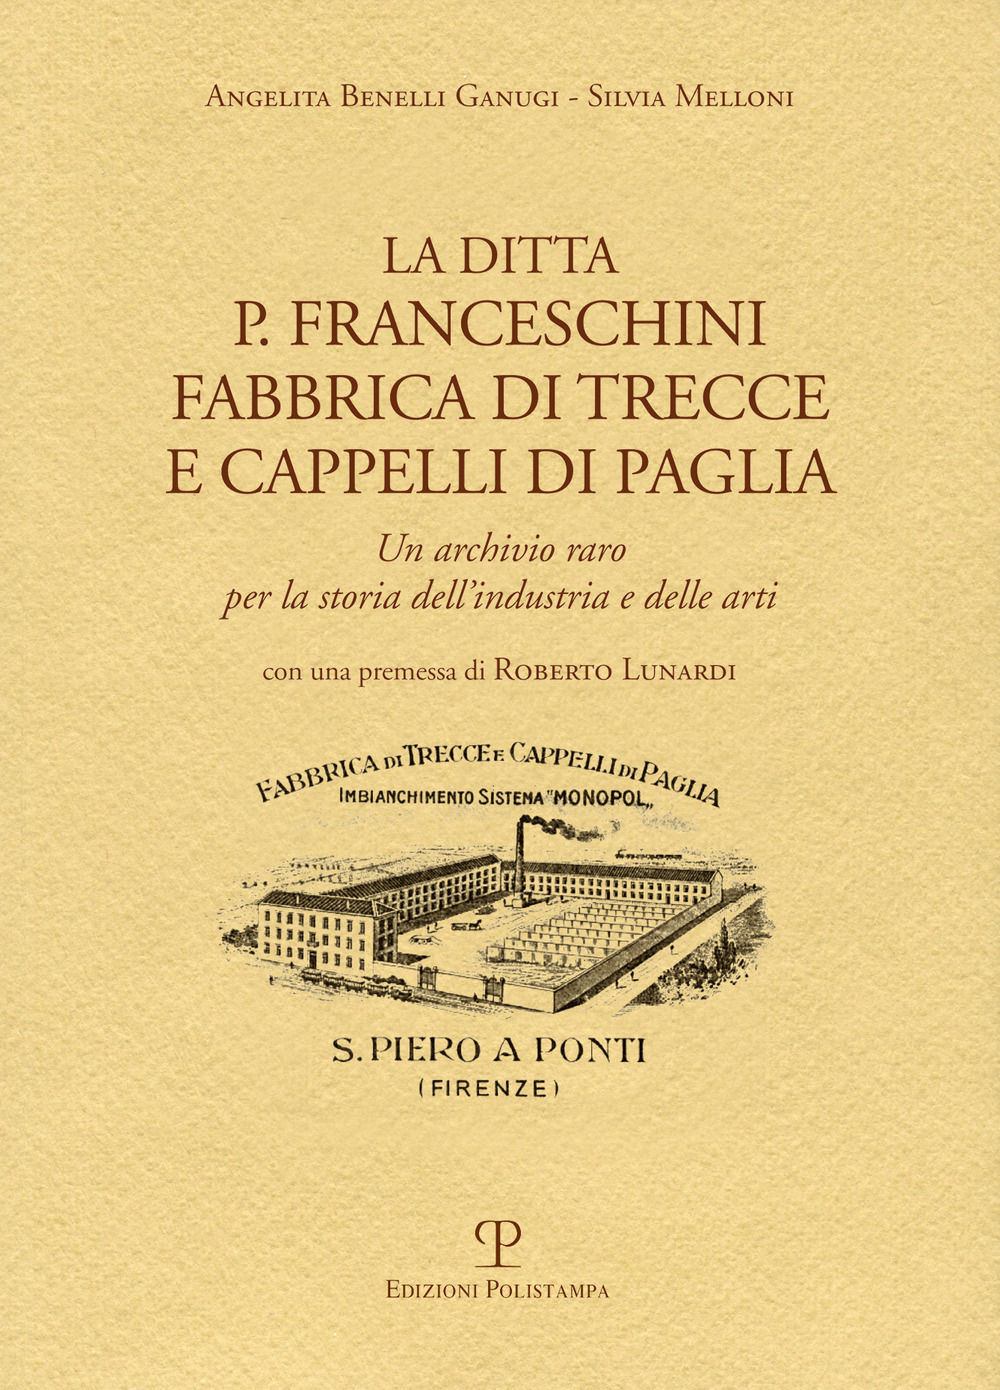 Image of La ditta P. Franceschini fabbrica di trecce a cappelli di paglia. Un archivio raro per la storia dell'industria e delle arti